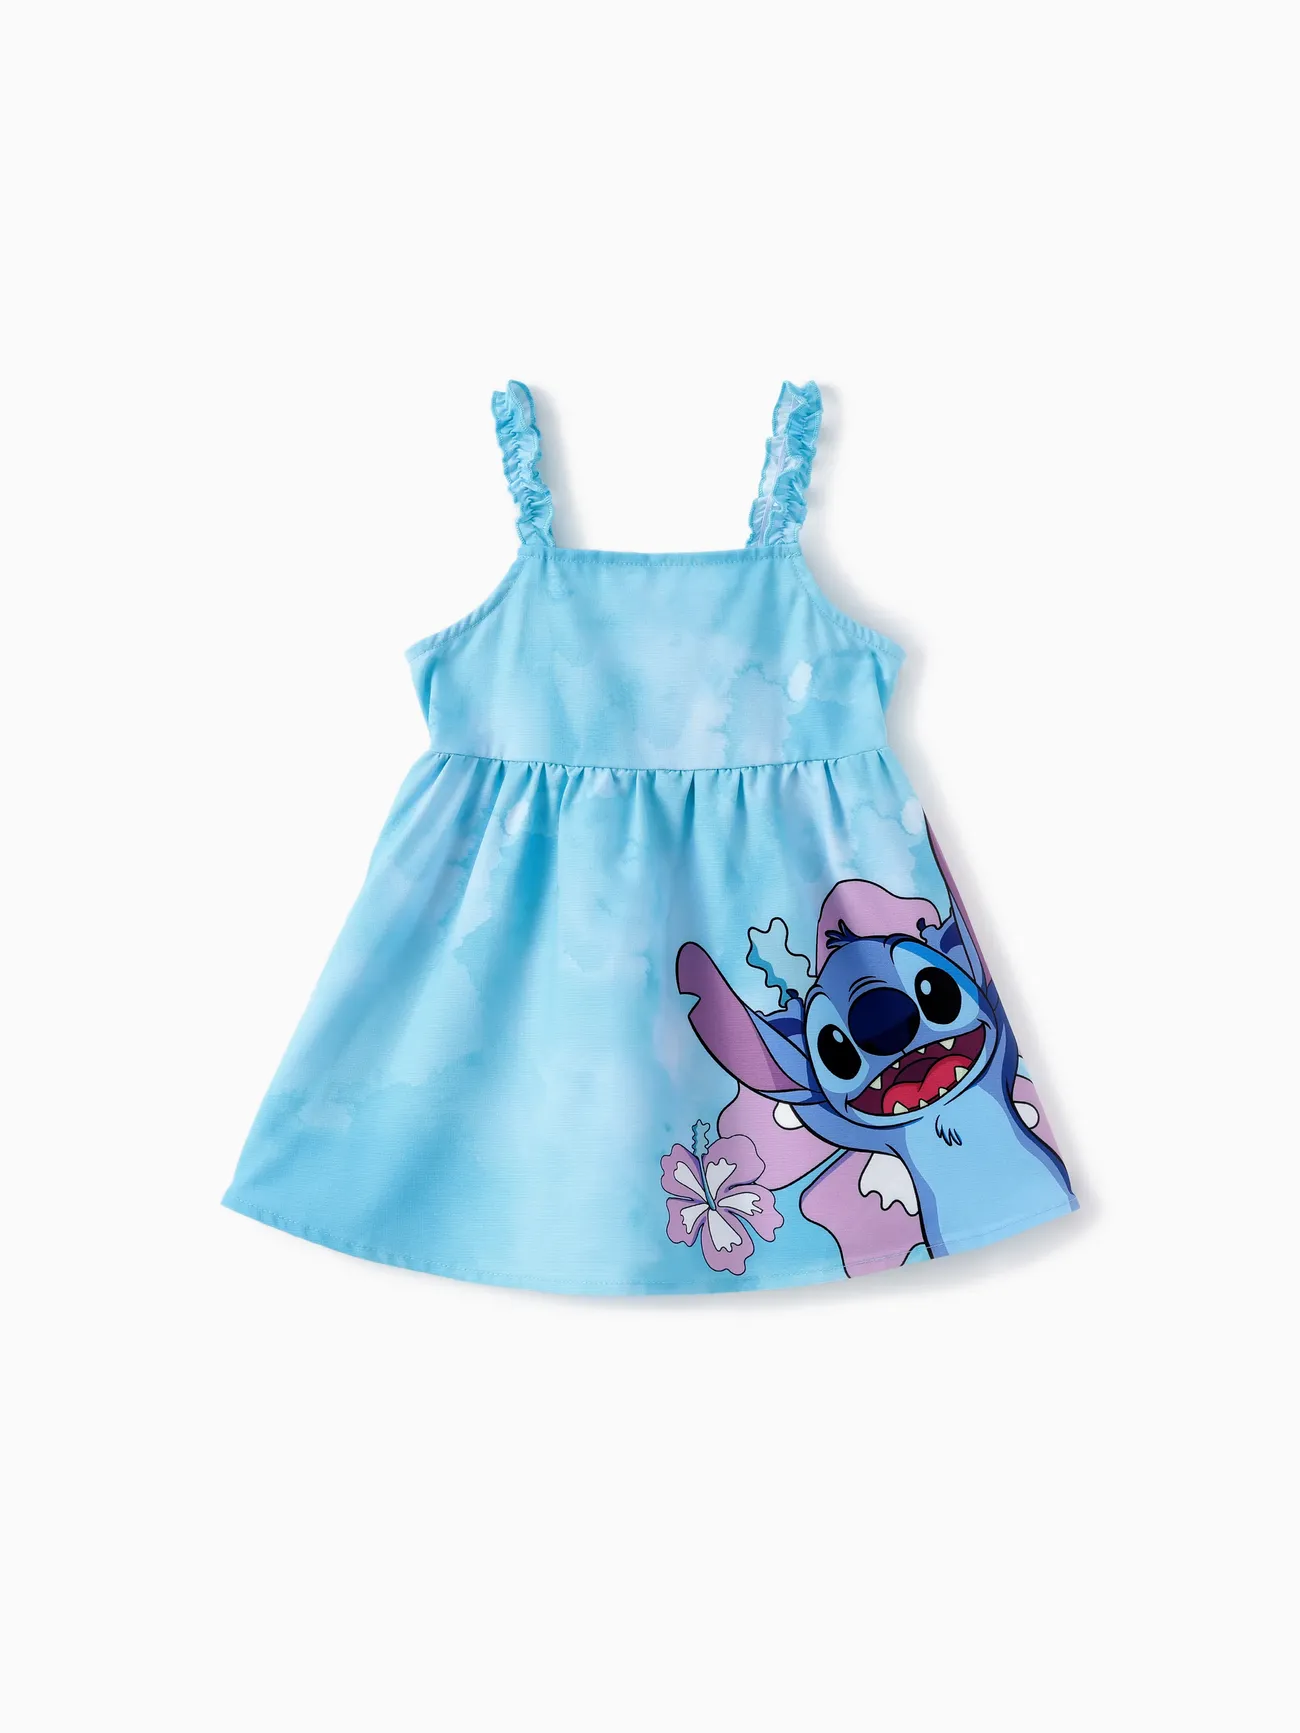 Ponto Disney Criança Menina Extremidades franzidas Infantil Plantas e flores tropicais Vestidos Azul big image 1